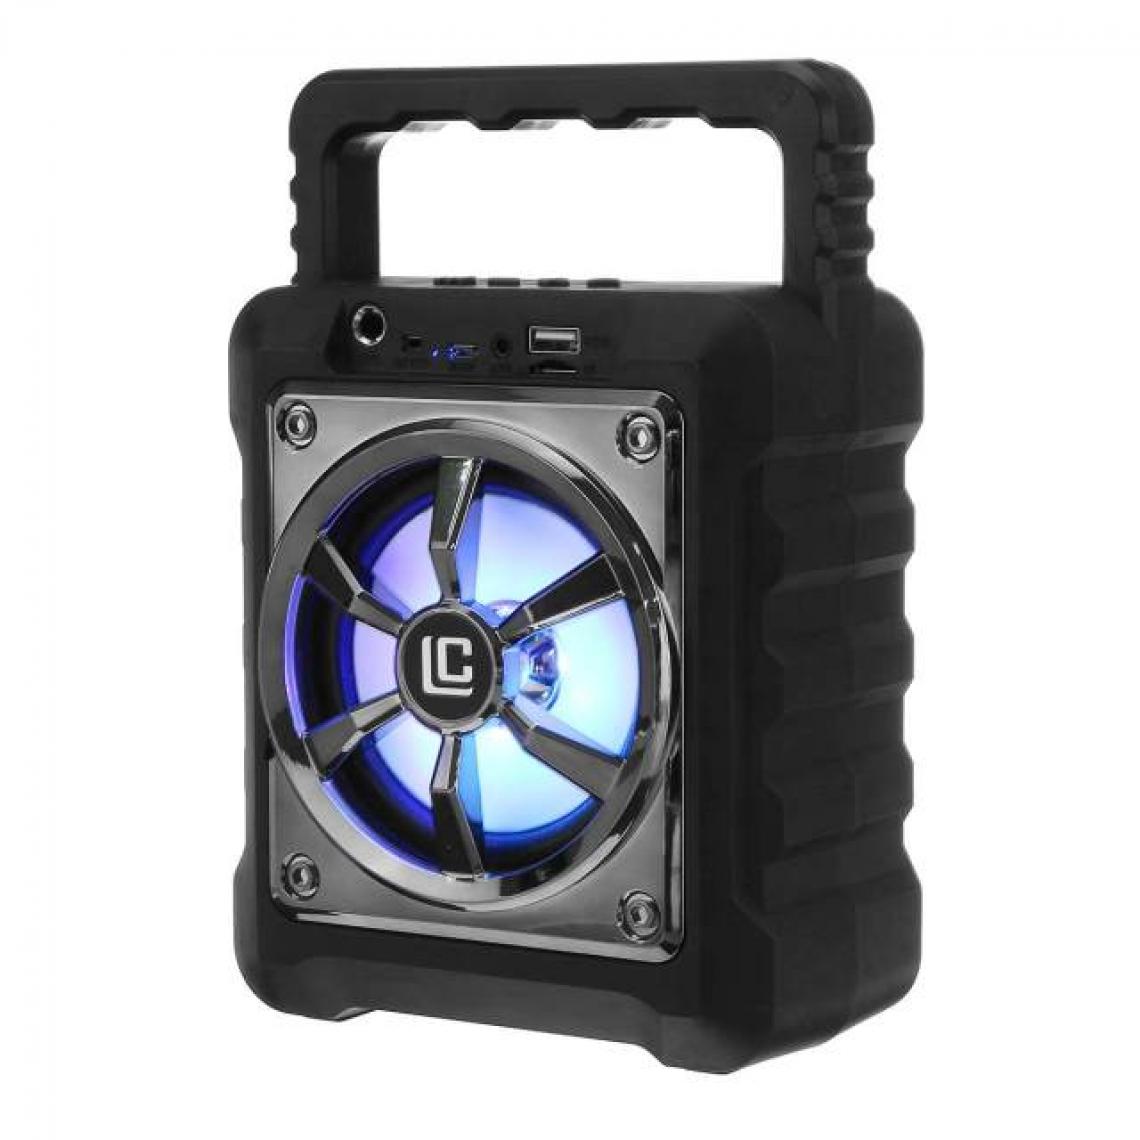 Universal - Haut-parleur Bluetooth portable noir avec microphone imperméable extérieur sans fil musique stéréo subwoofer HiFi son support FM TF AUX | Haut-parleur portable(Le noir) - Hauts-parleurs